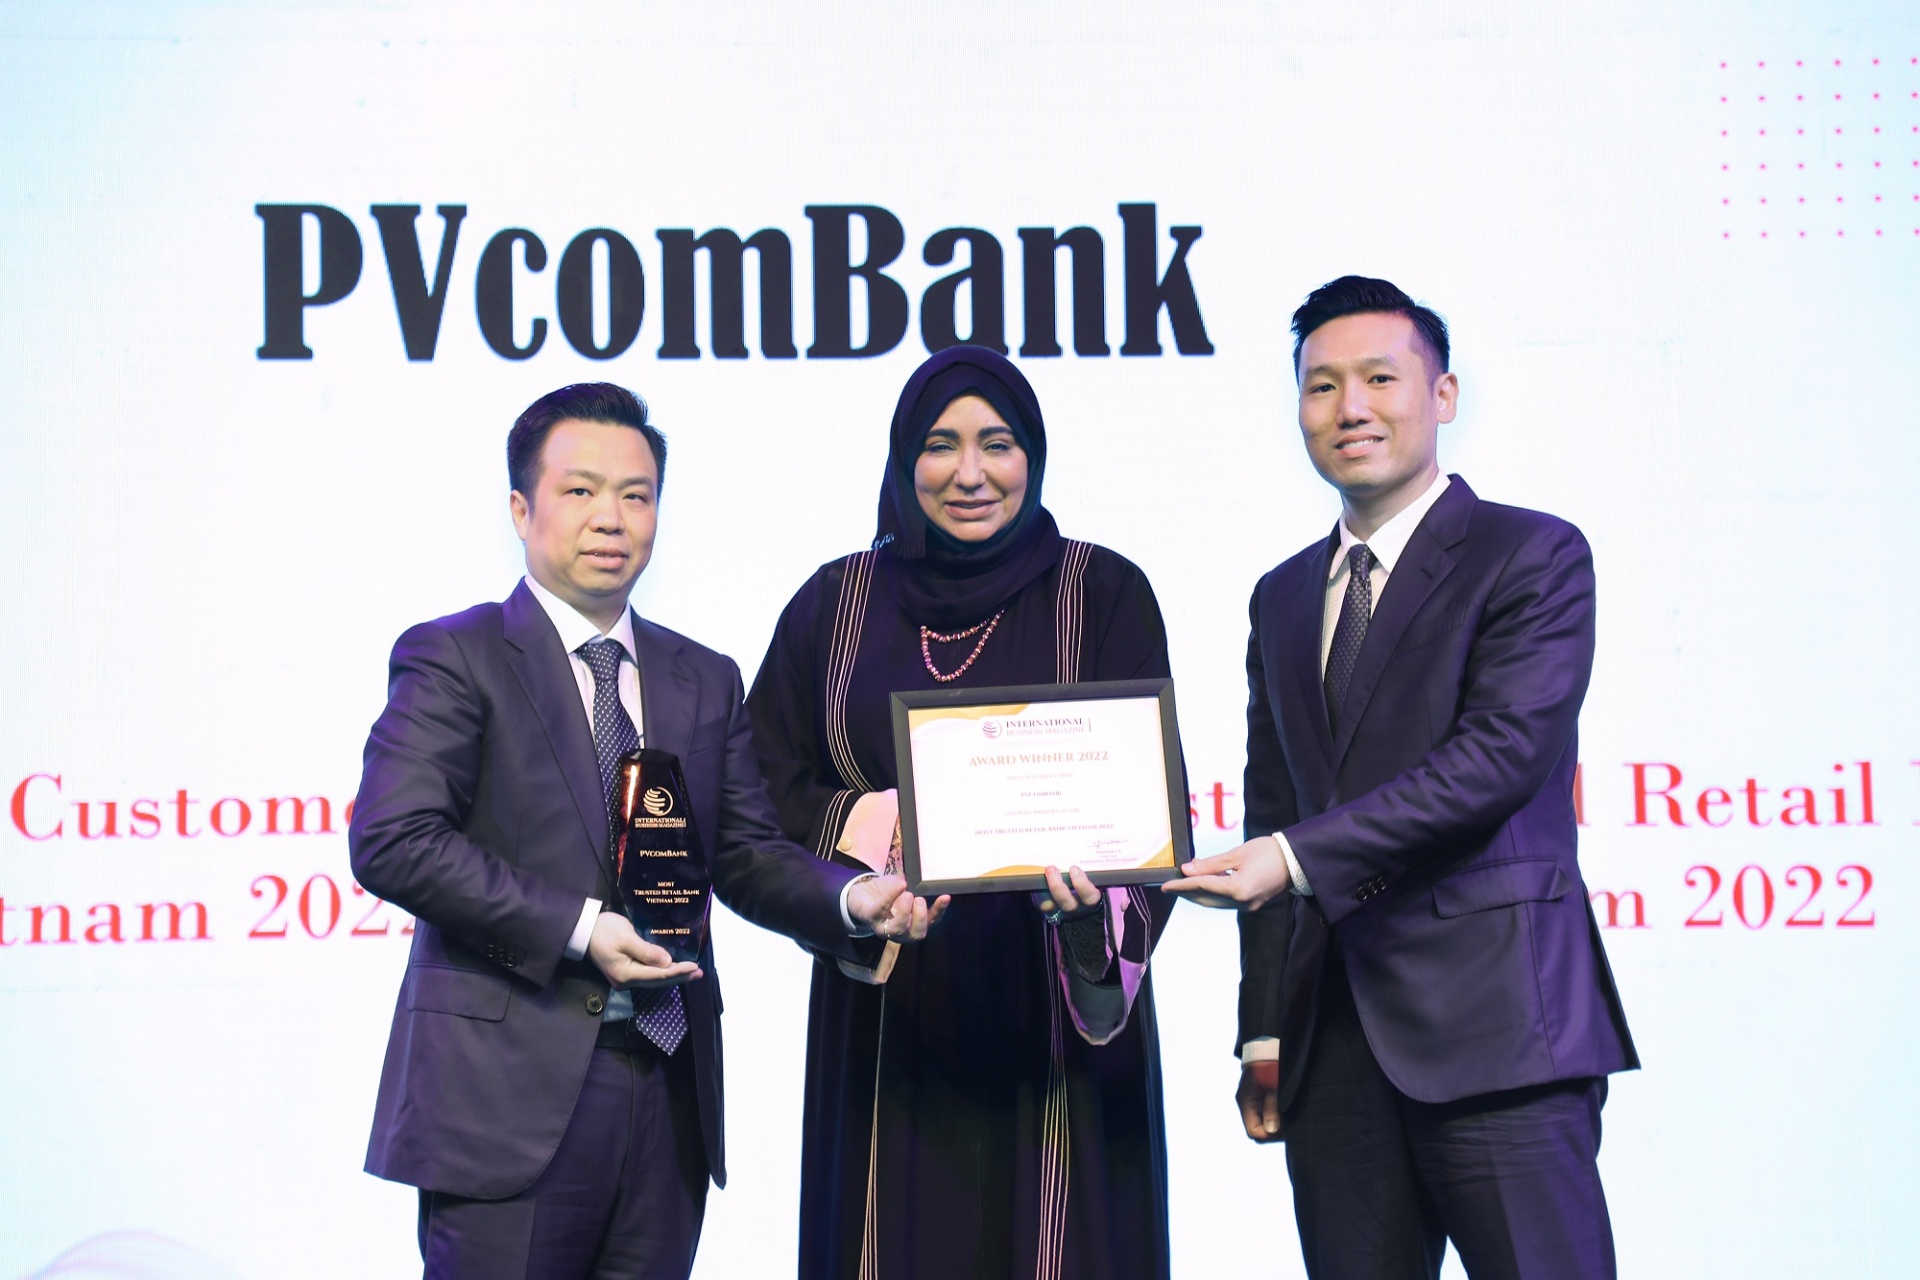 IBM chọn PVcomBank là ngân hàng có dịch vụ khách hàng tốt nhất và bán lẻ uy tín nhất